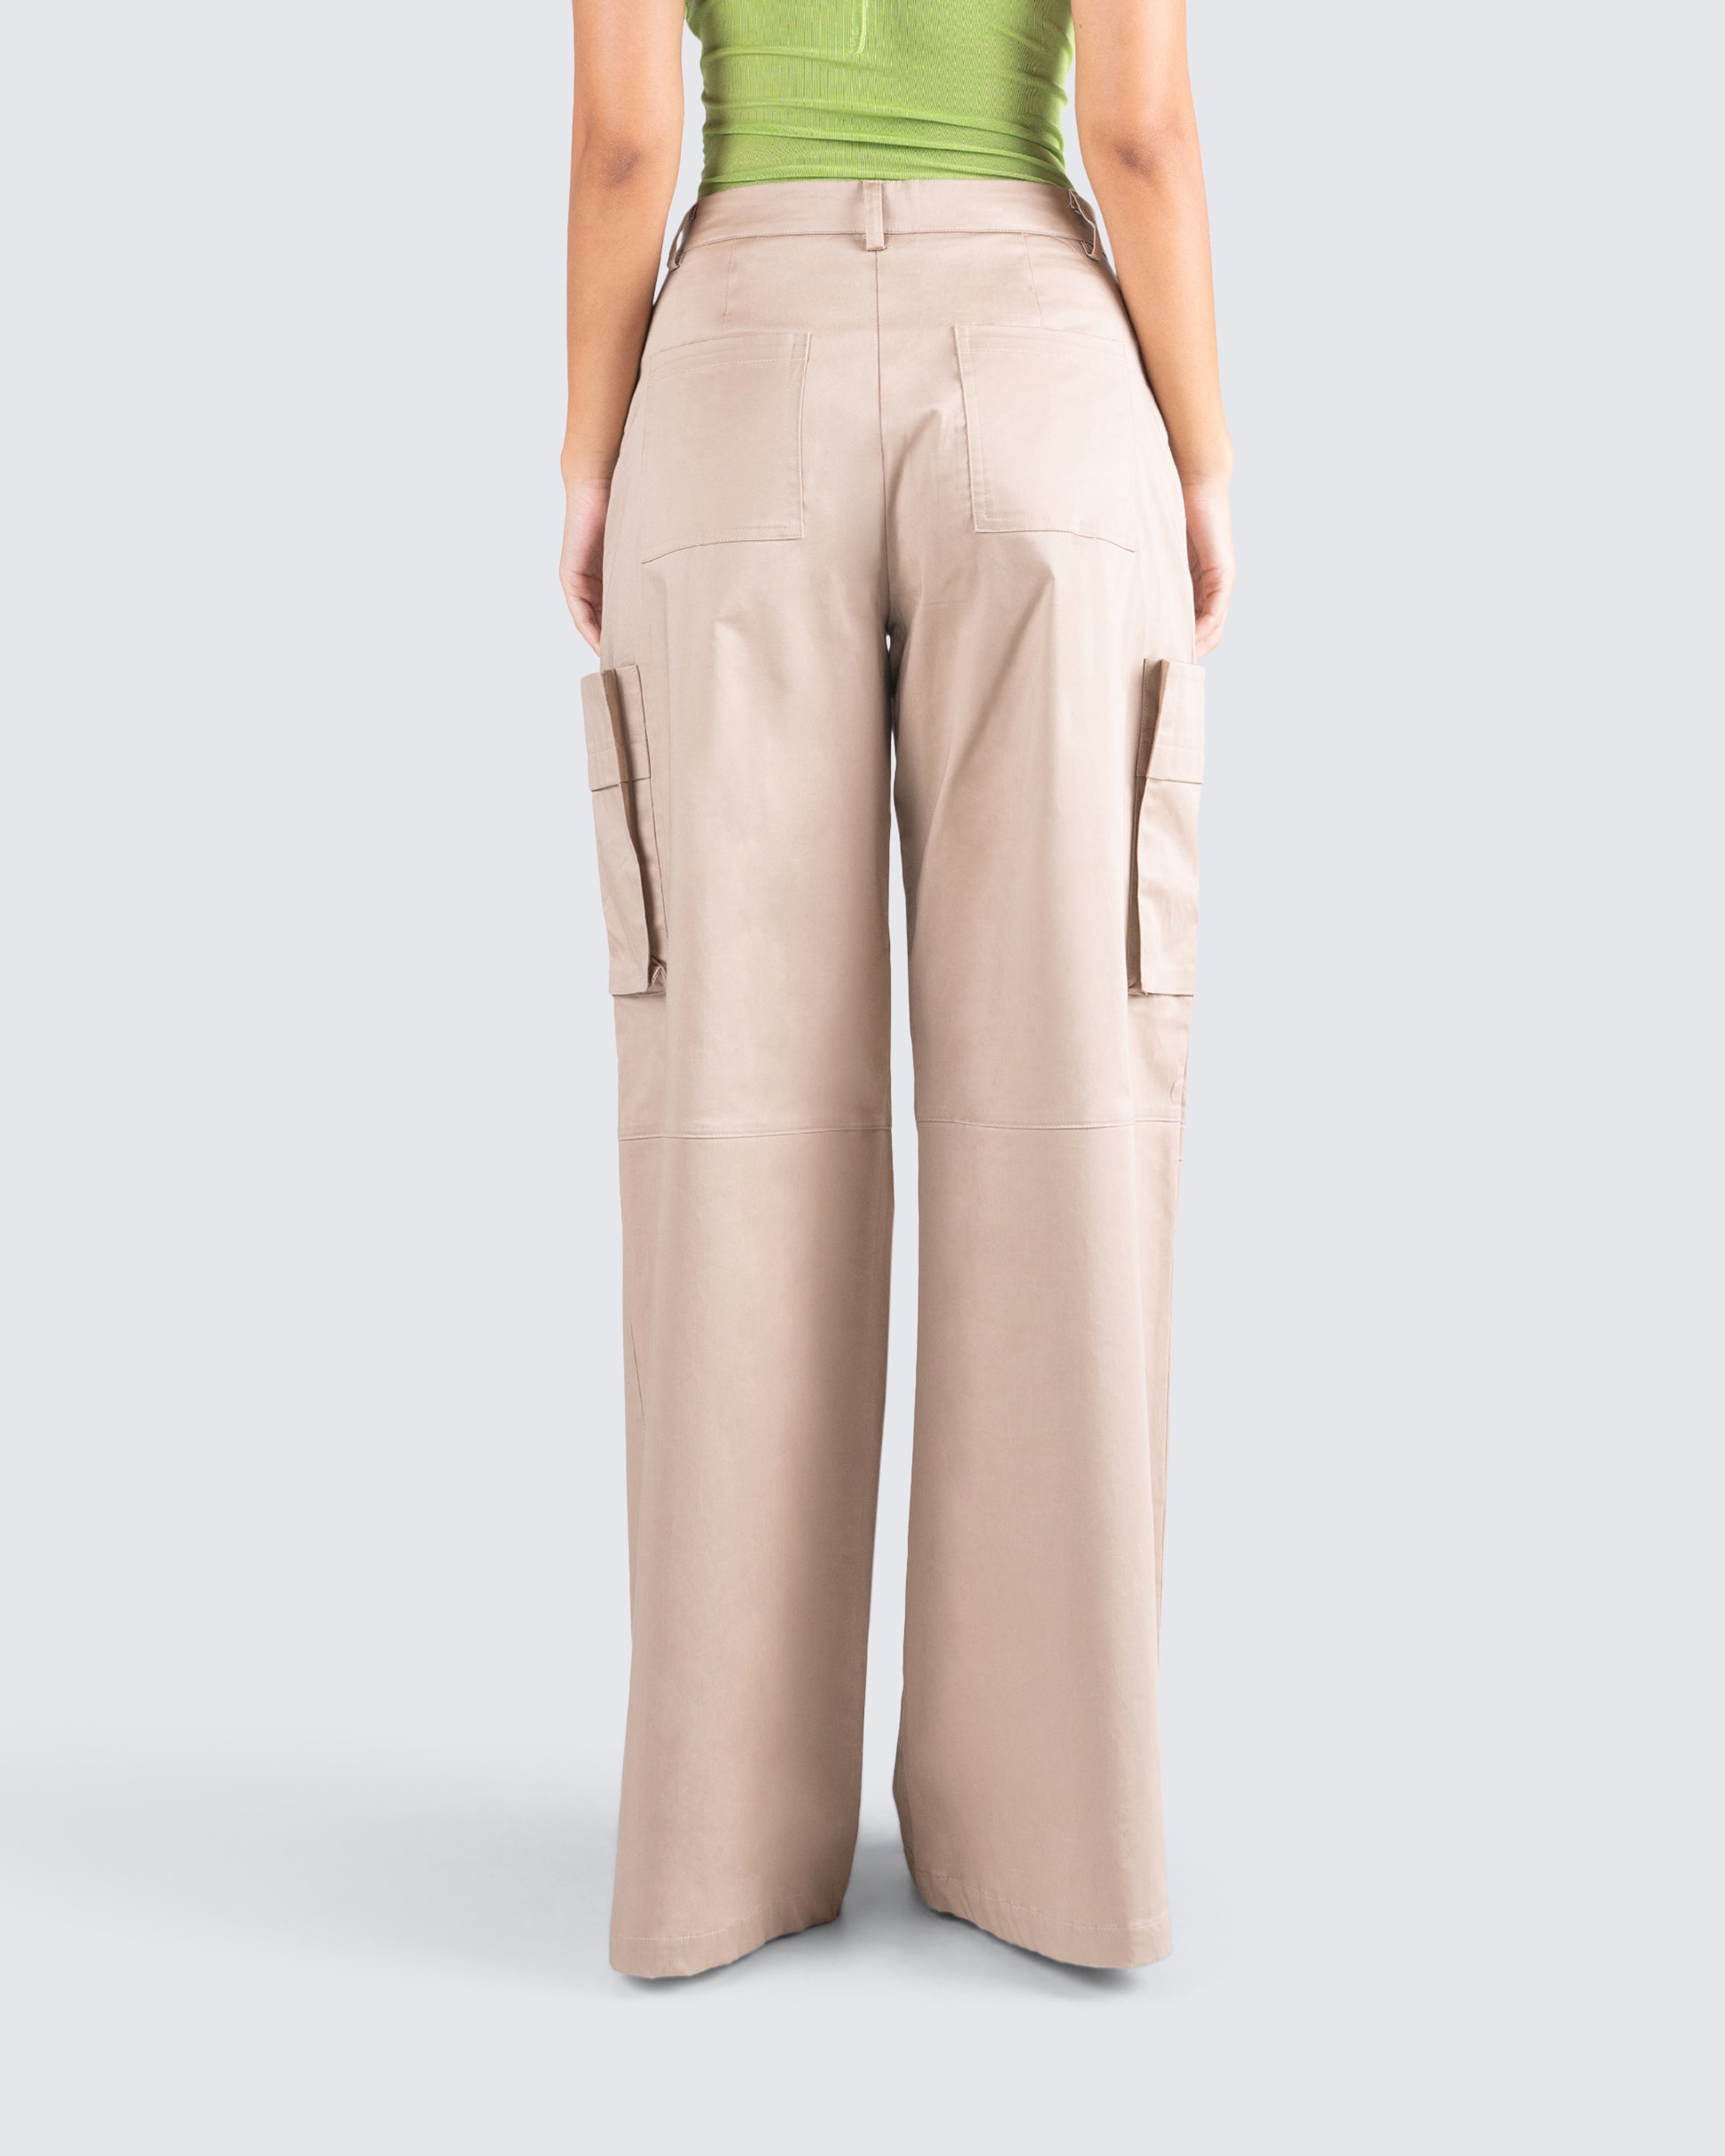 Tan Cargo Pants - Utilitarian Clothing - High-Rise Cargo Pants - Lulus